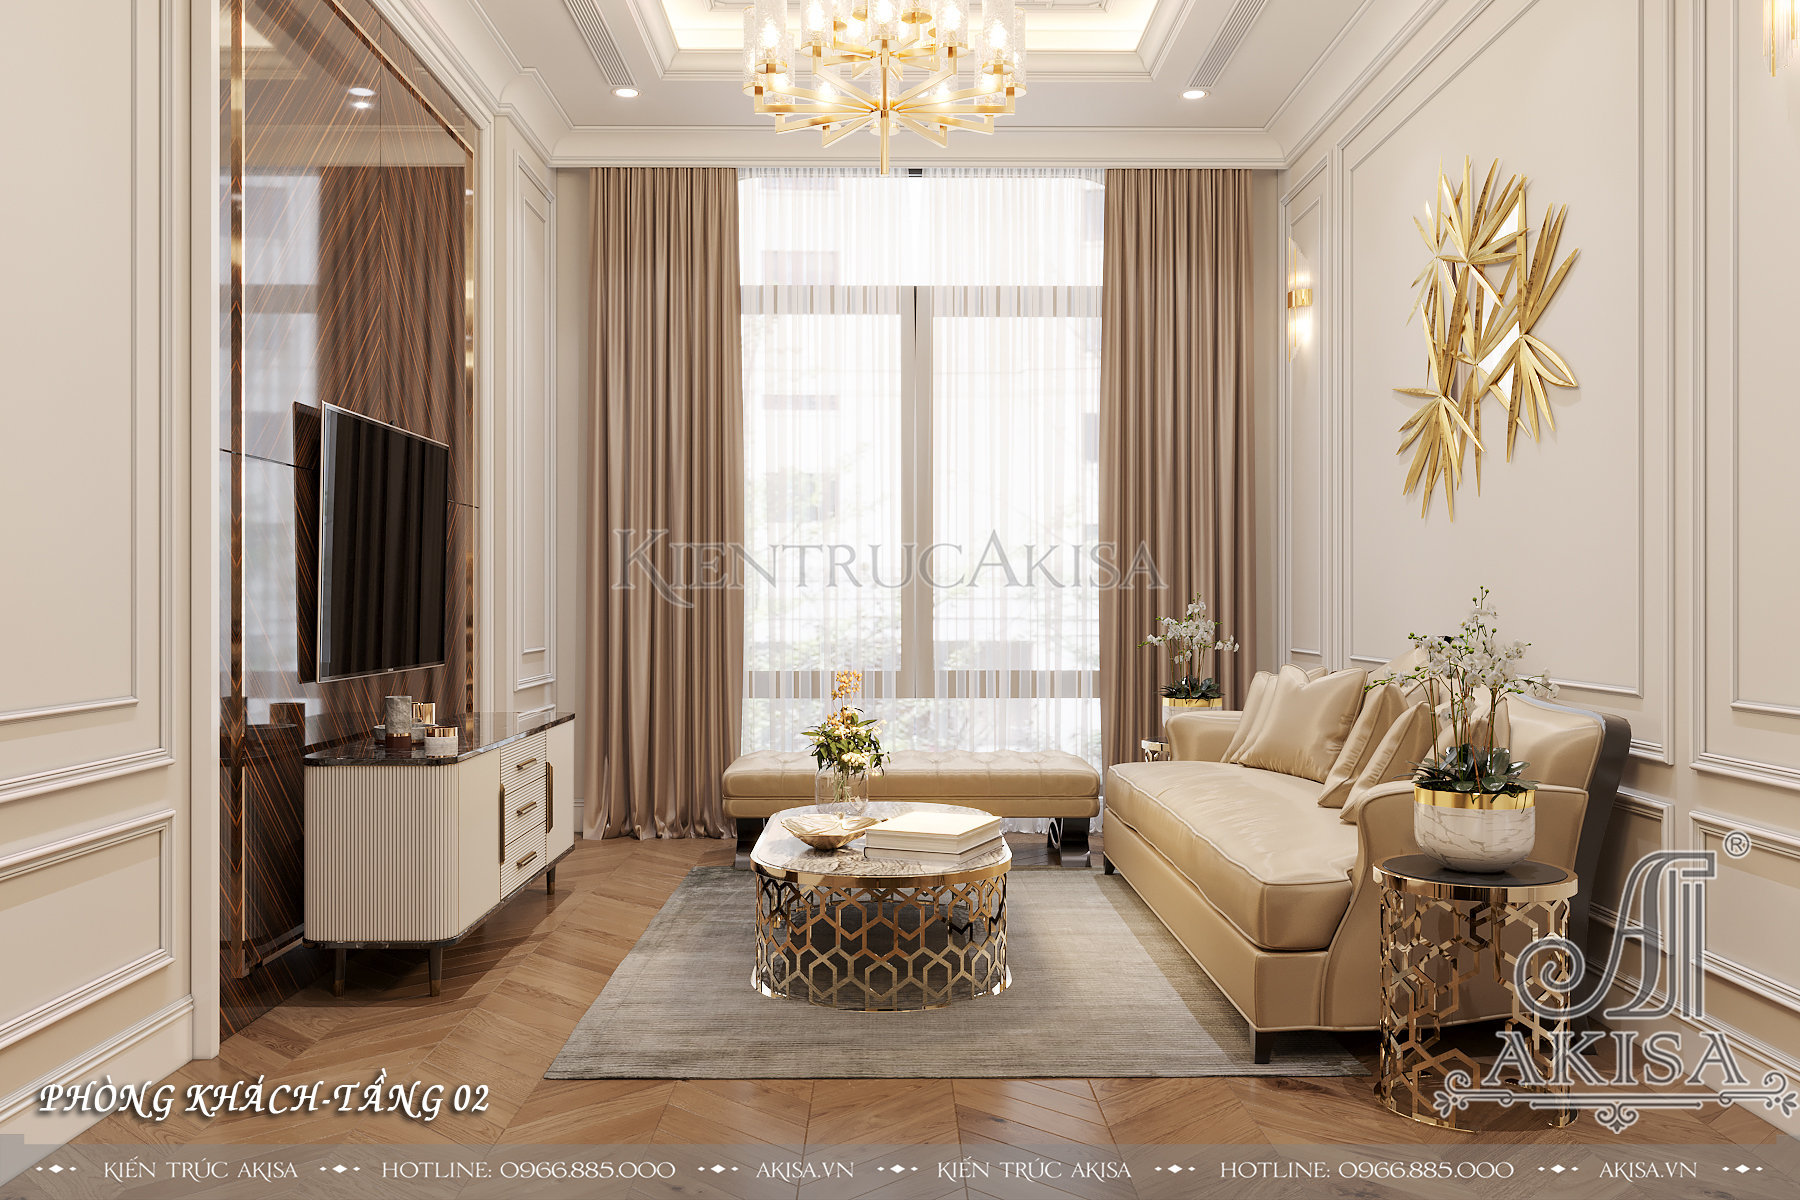 Nội thất nhà đẹp | +999 mẫu thiết kế nội thất nhà đẹp hot nhất 2022